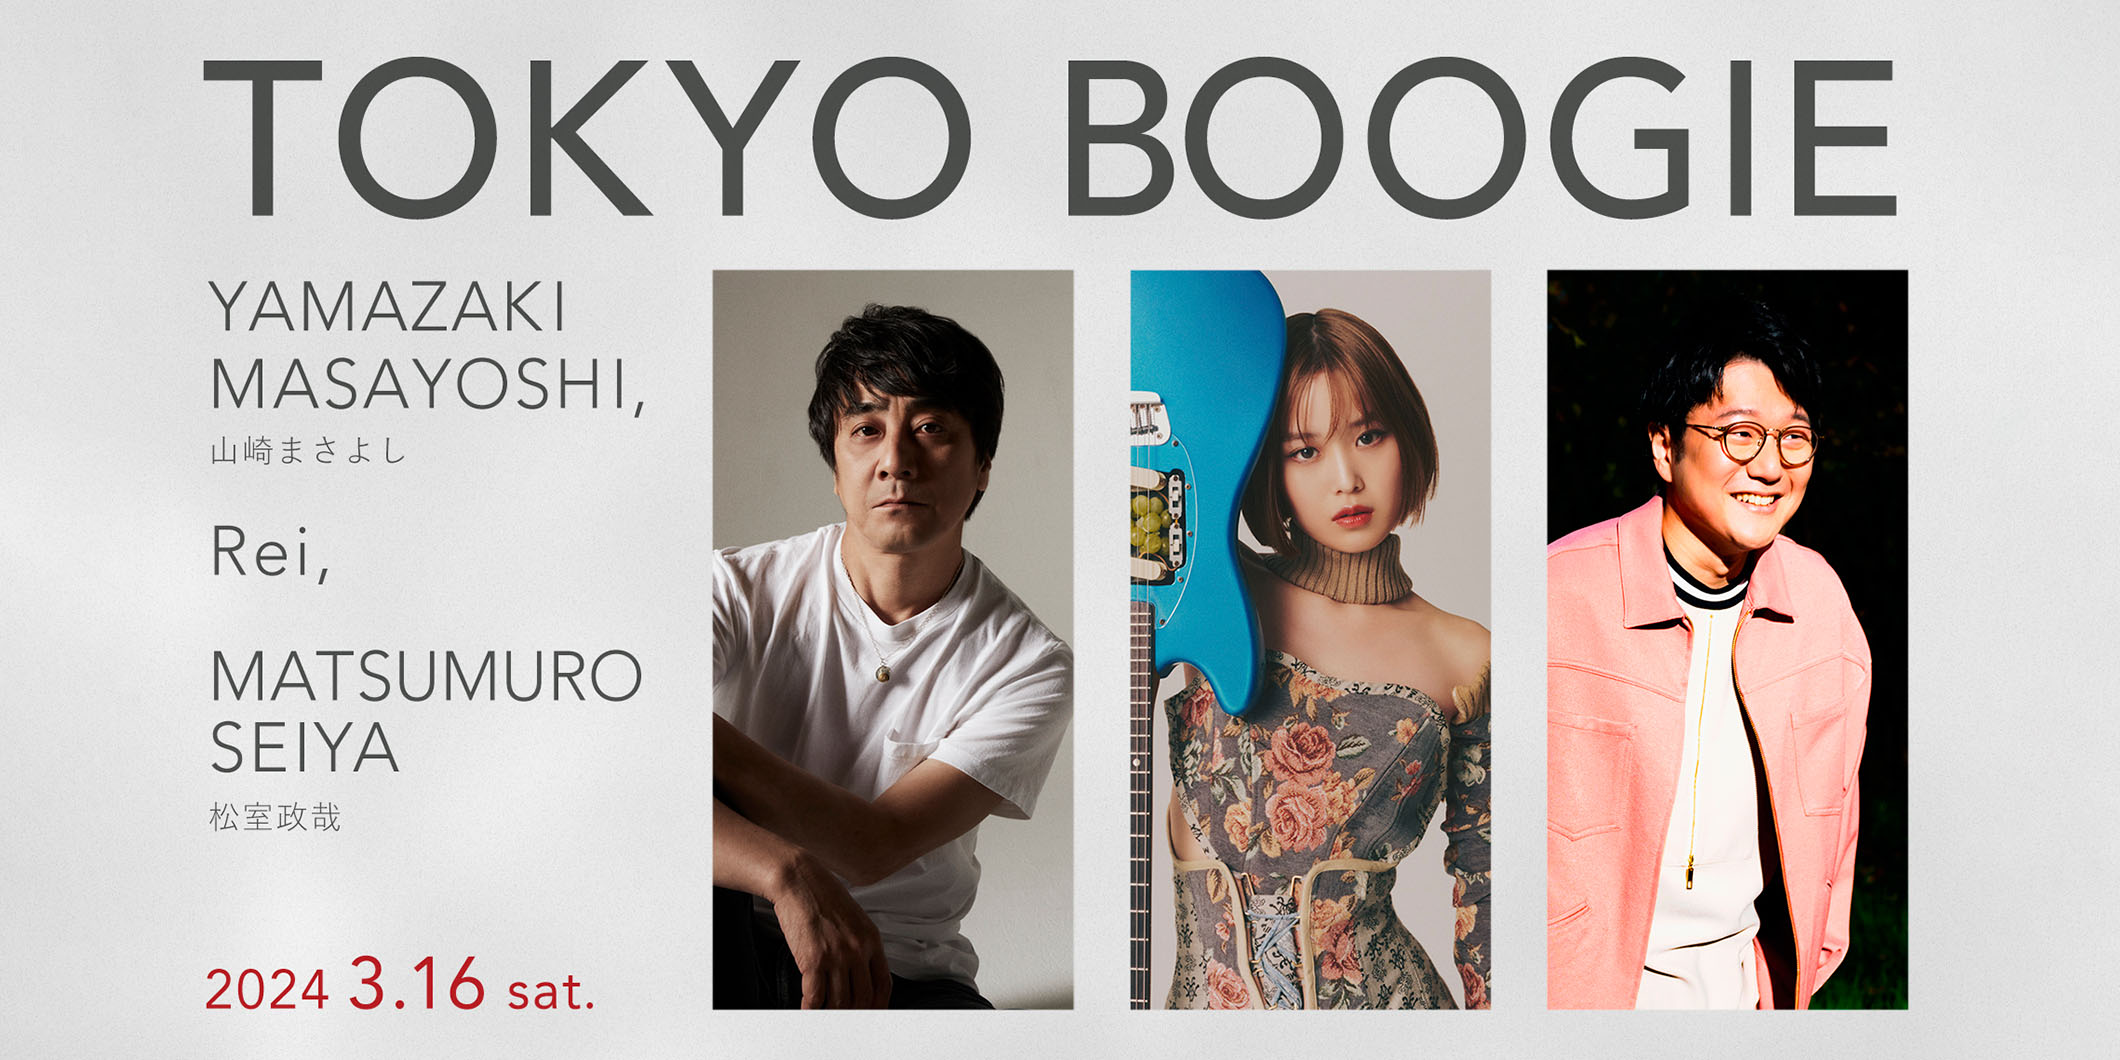 山崎まさよし、Rei、松室政哉が出演する“TOKYO BOOGIE”が3月16日にコットンクラブにて開催